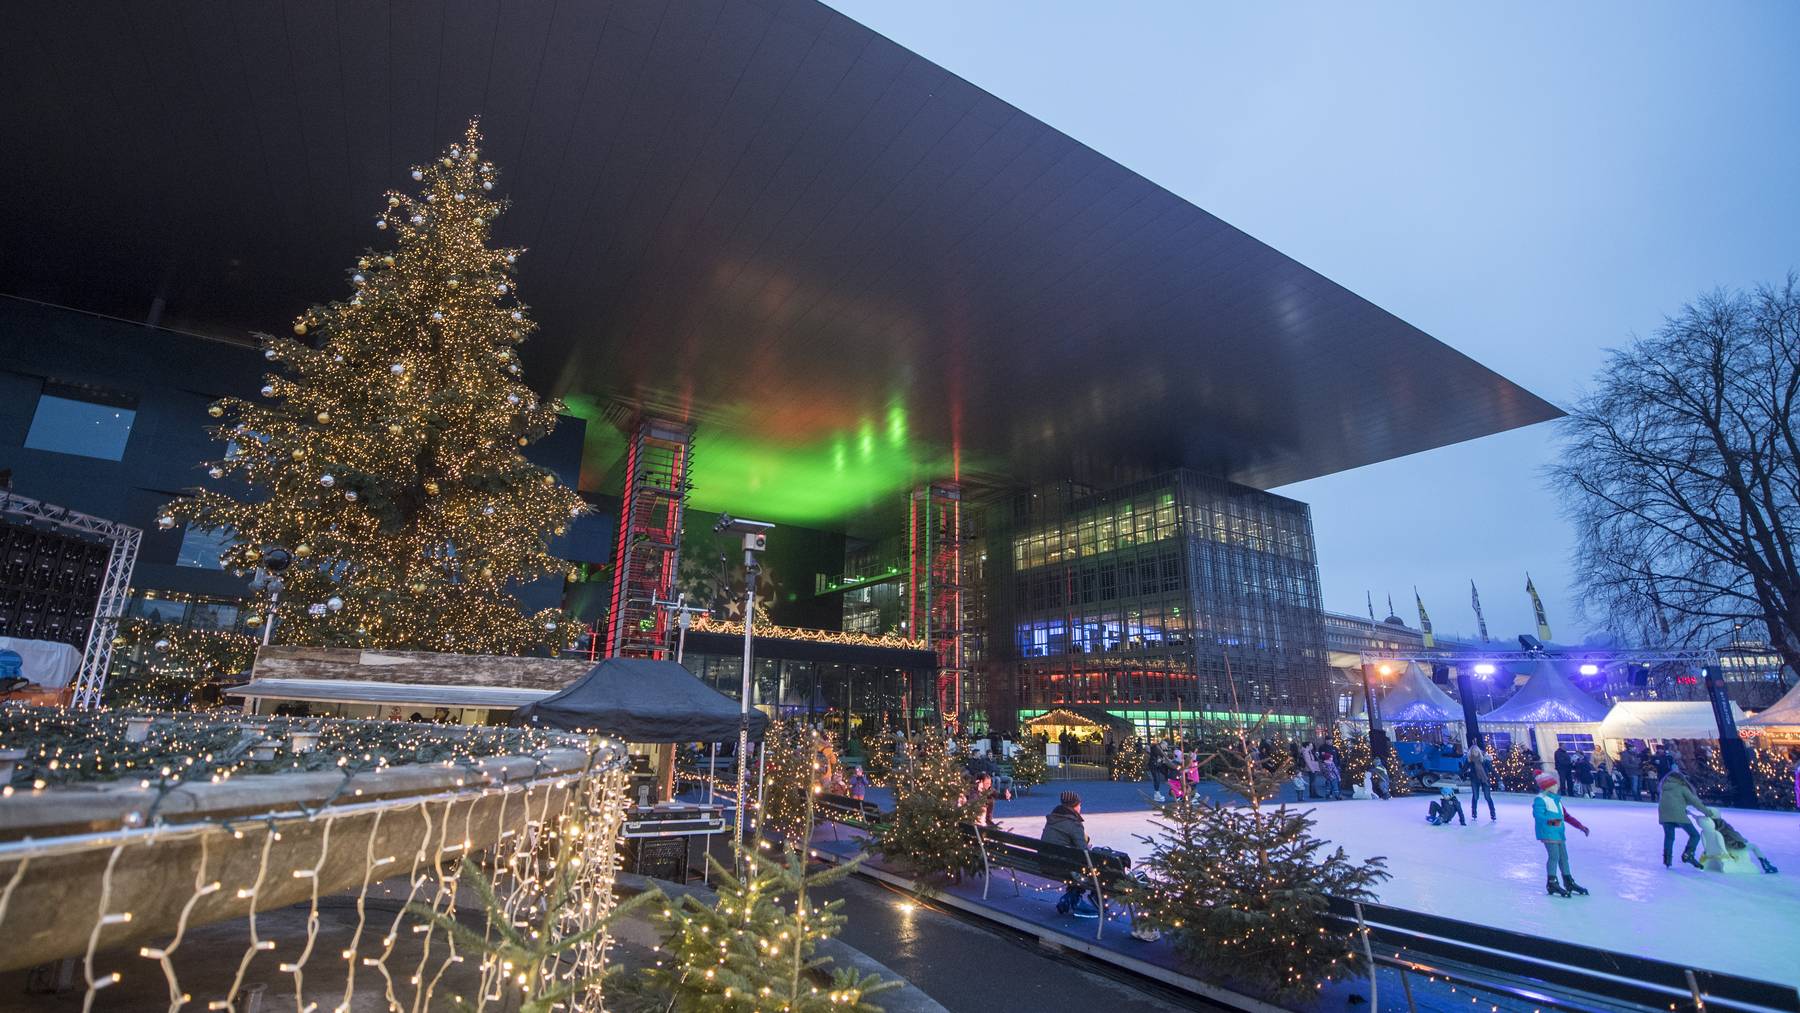 Farbenfroh mit Weihnachtsdekoration und Eisfeld präsentiert sich das KKL in Luzern, am Dienstag, 18. Dezember 2018.